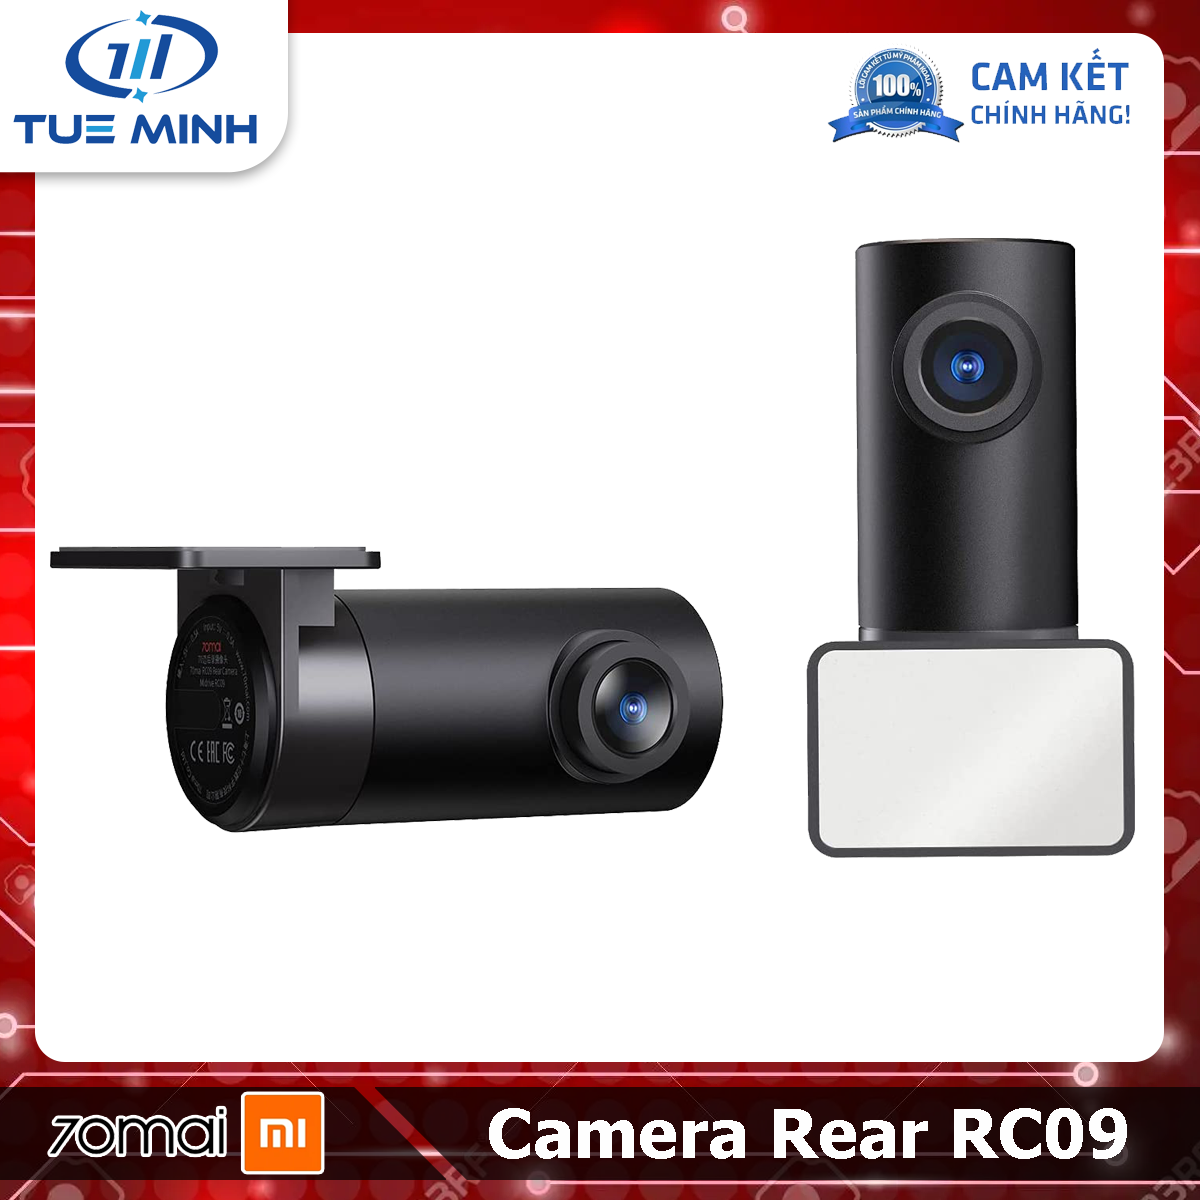 Cam sau 70mai Camera Rear RC09 sử dụng cho Camera hành trình 70mai A400